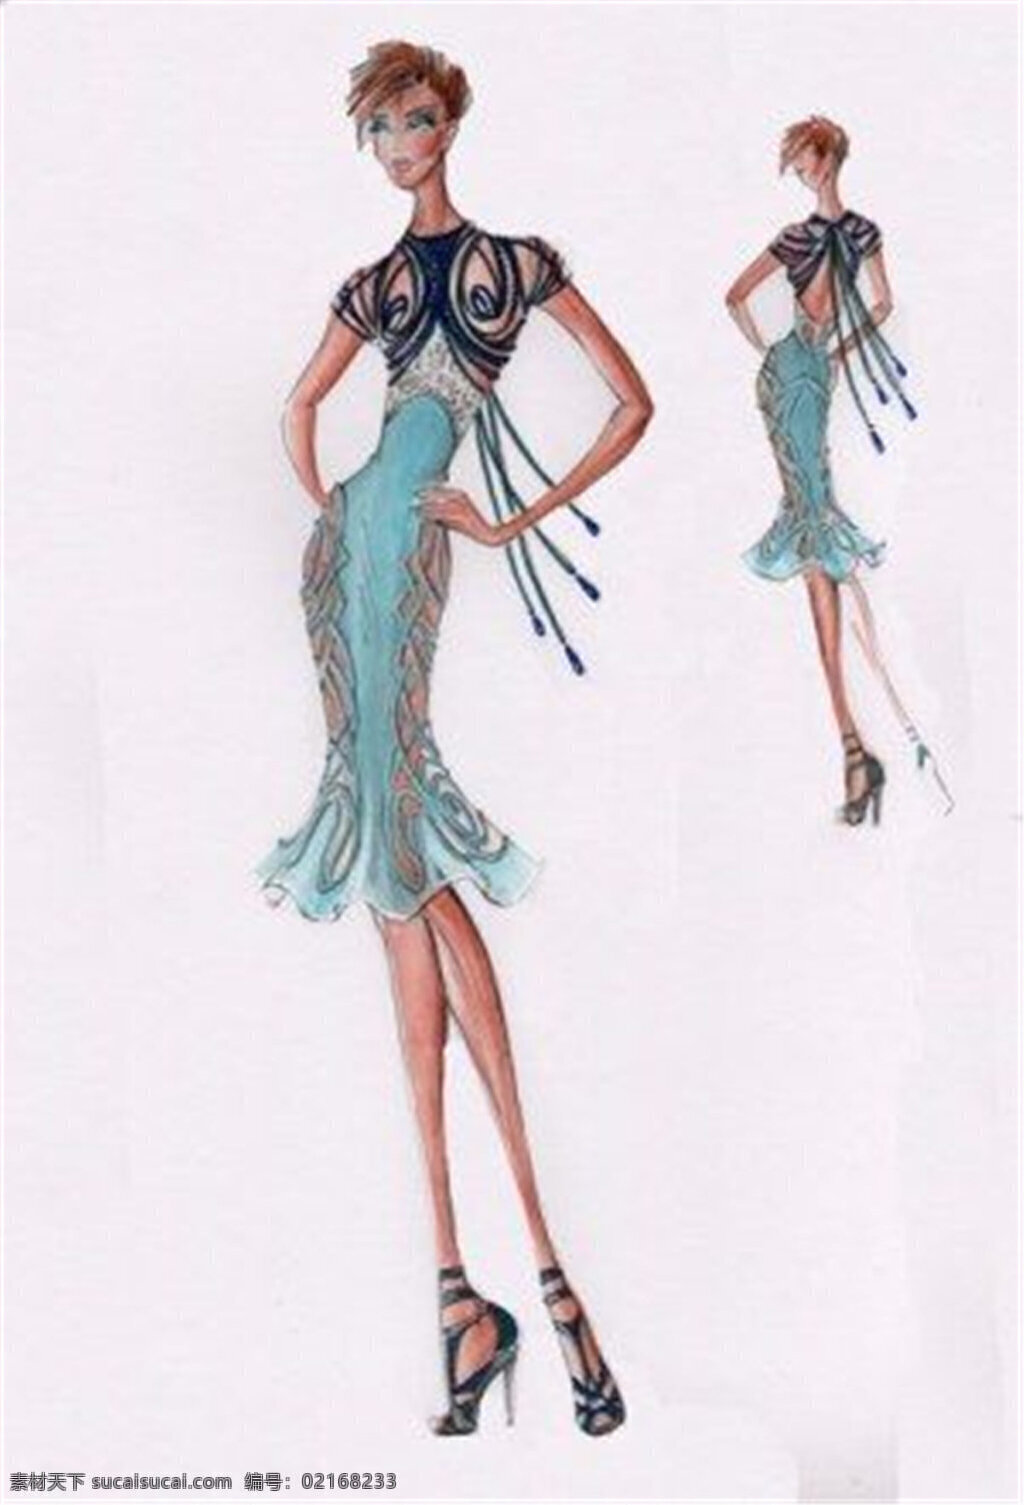 蓝色 紧身 裙 设计图 服装设计 时尚女装 职业女装 职业装 女装设计 效果图 短裙 衬衫 服装 服装效果图 连衣裙